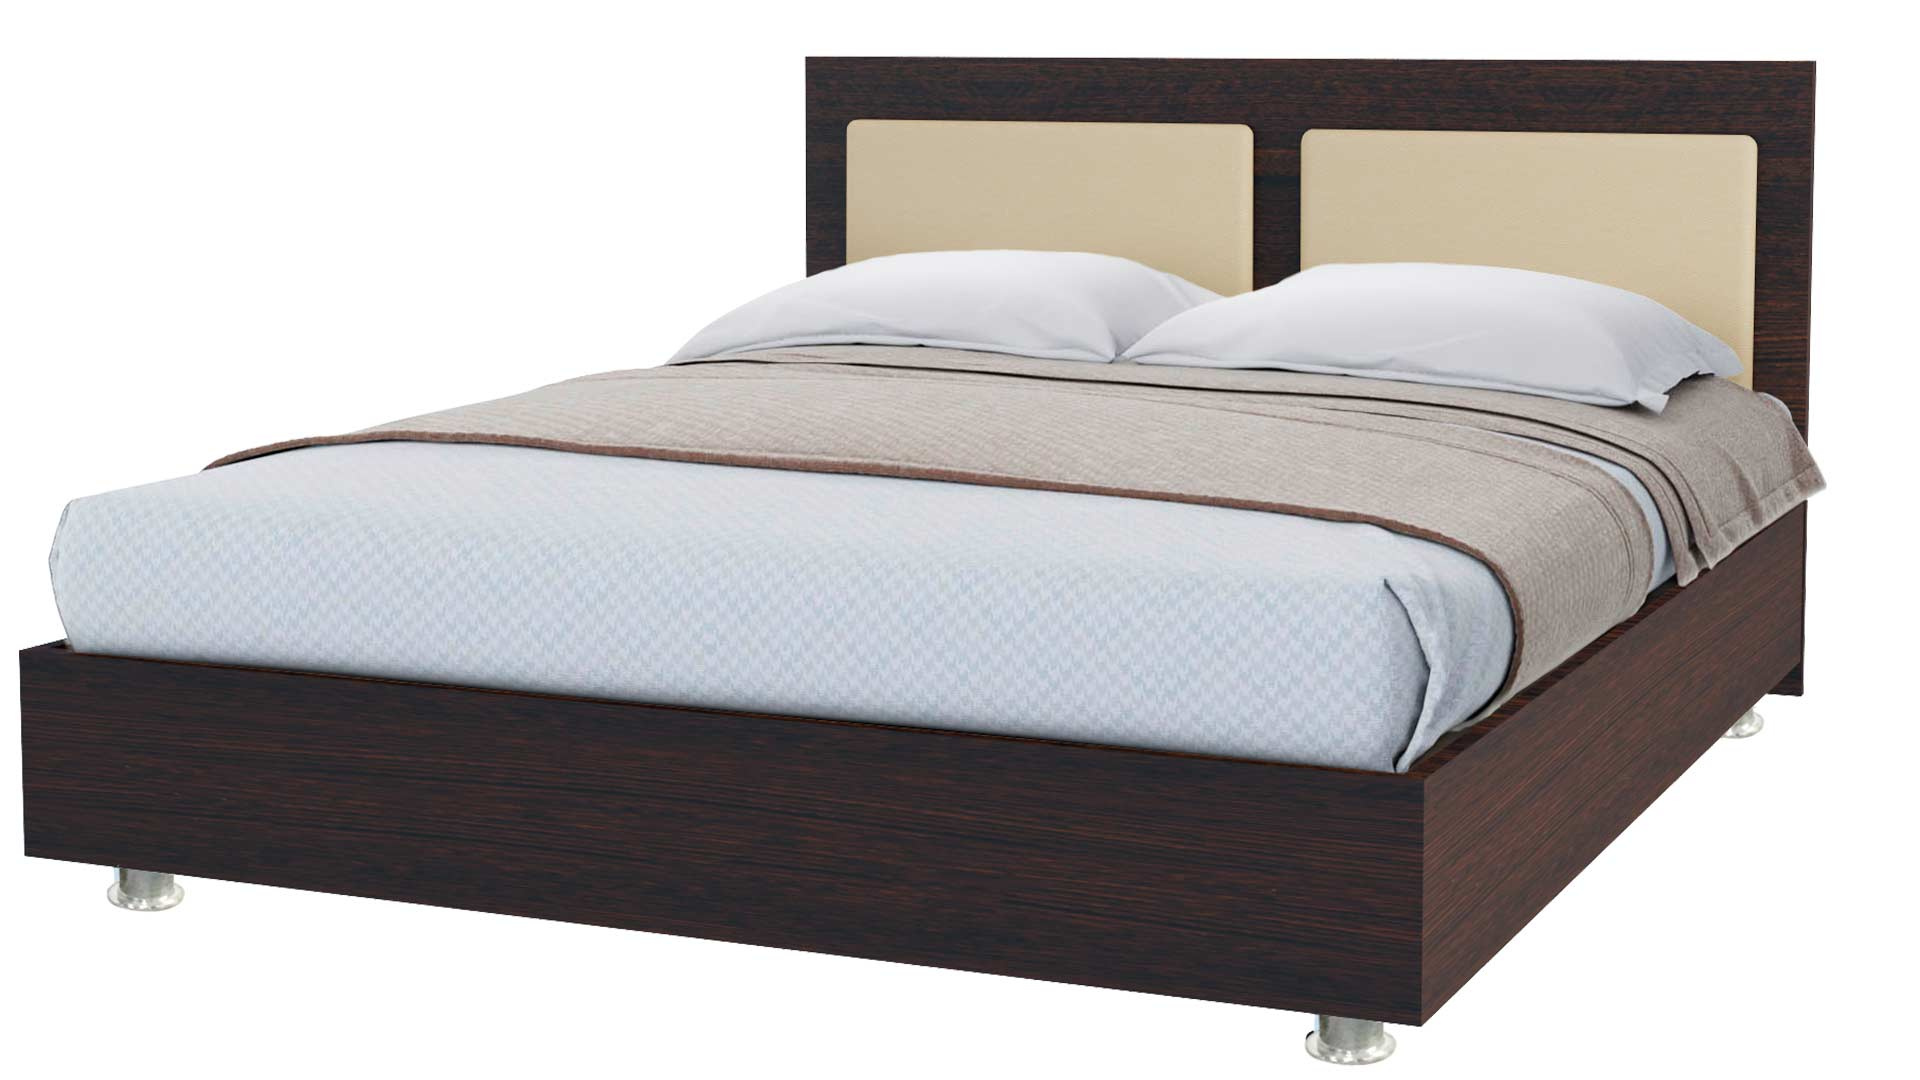 Кровать 160х200 купить спб недорого от производителя. Кровать Sontelle Киара 140x200. Кровать Марс 160 200. Кровать (160х200) Оскар бр. Кровать Sontelle Амонд 160х190.